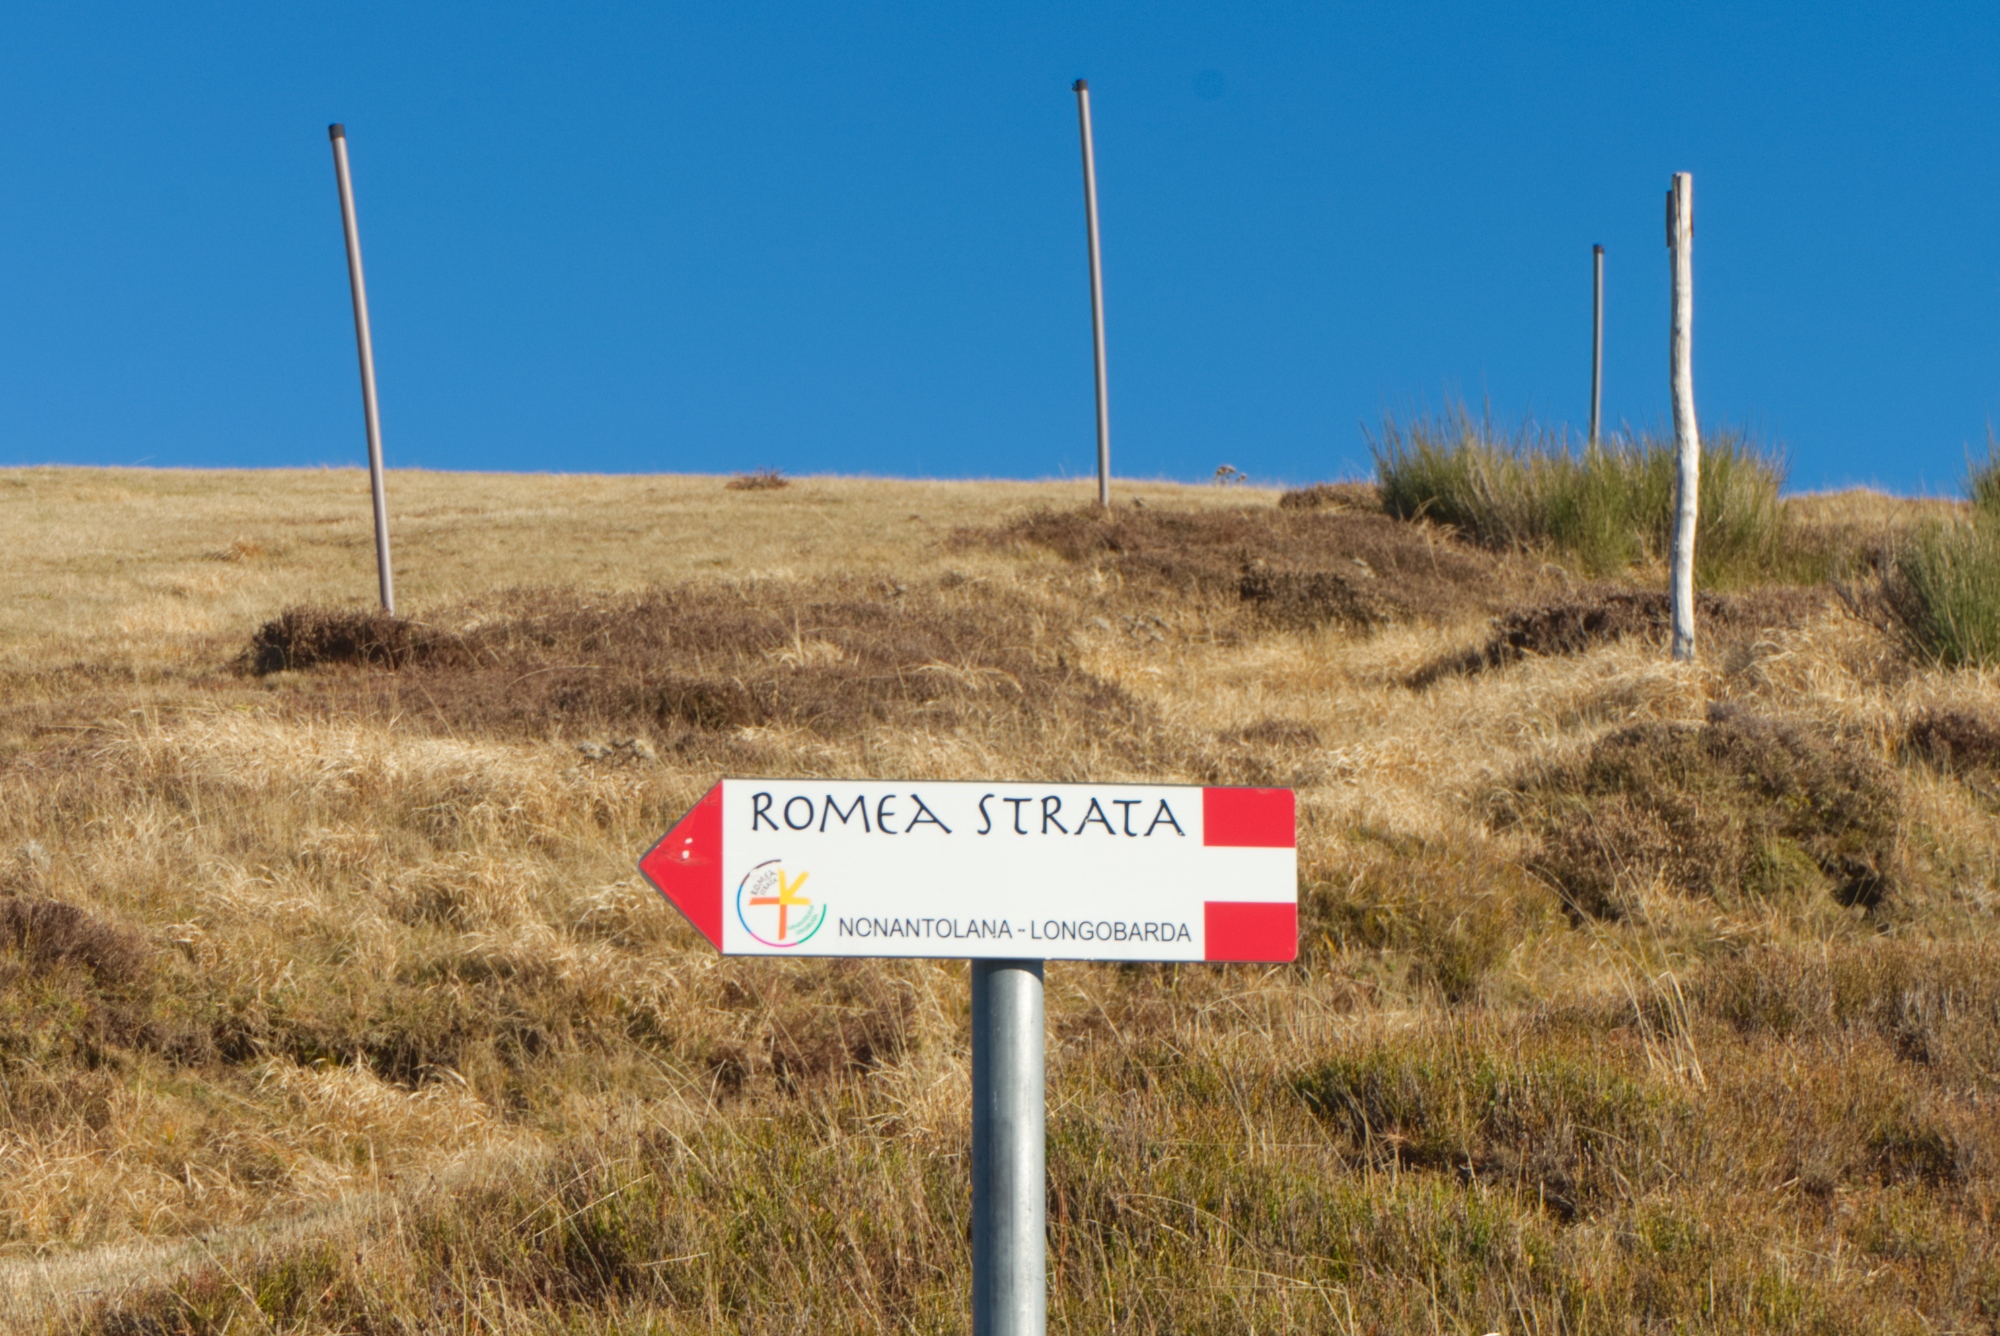 Señalización a lo largo de Romea Strata